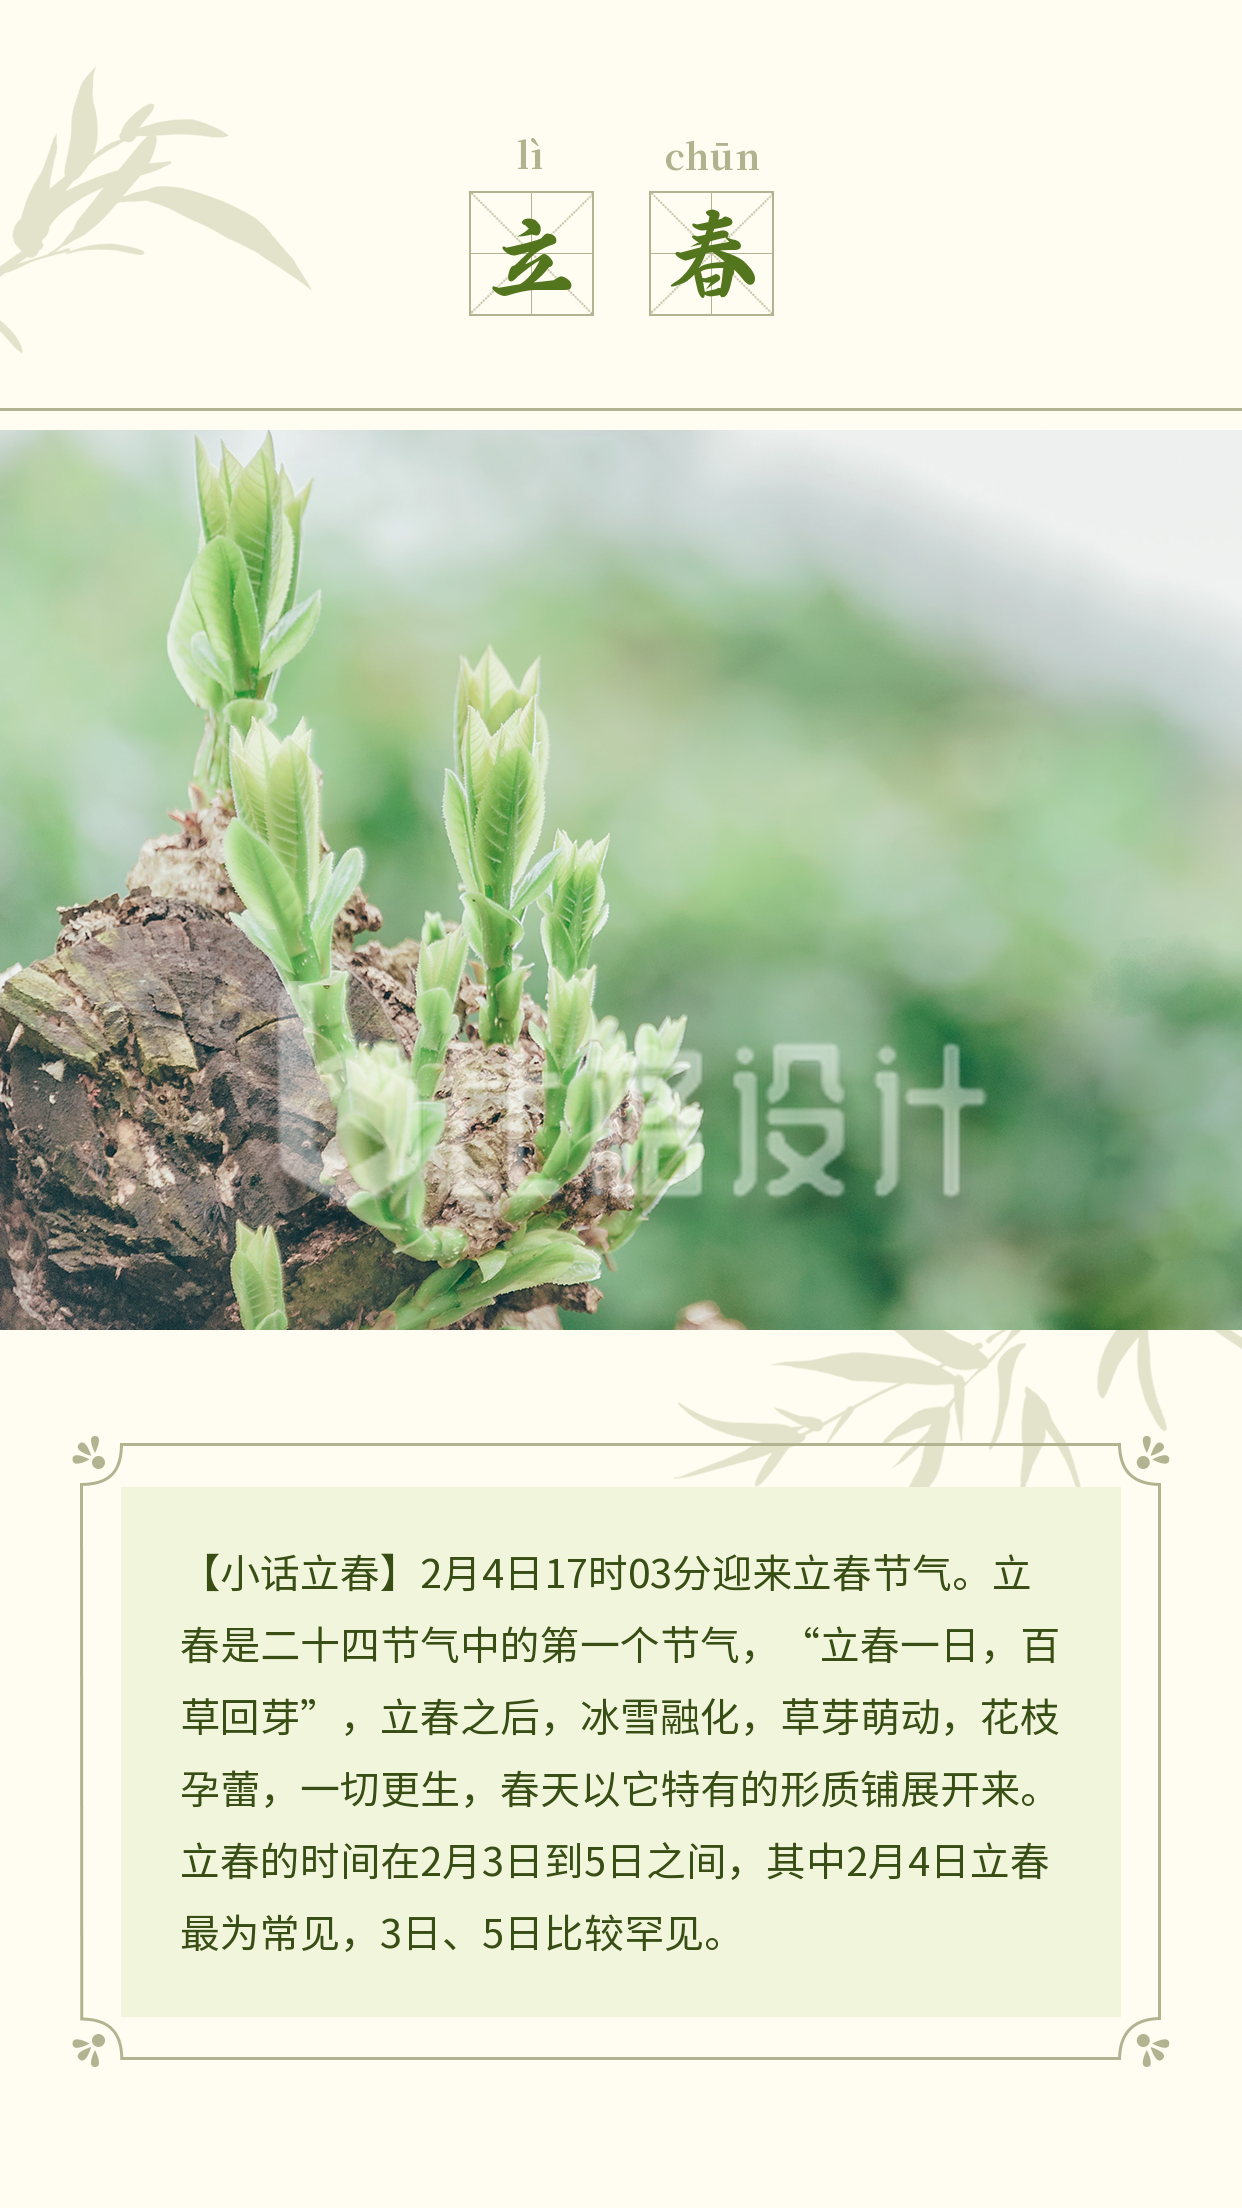 立春习俗介绍淡雅中国风绿色通用竖版配图